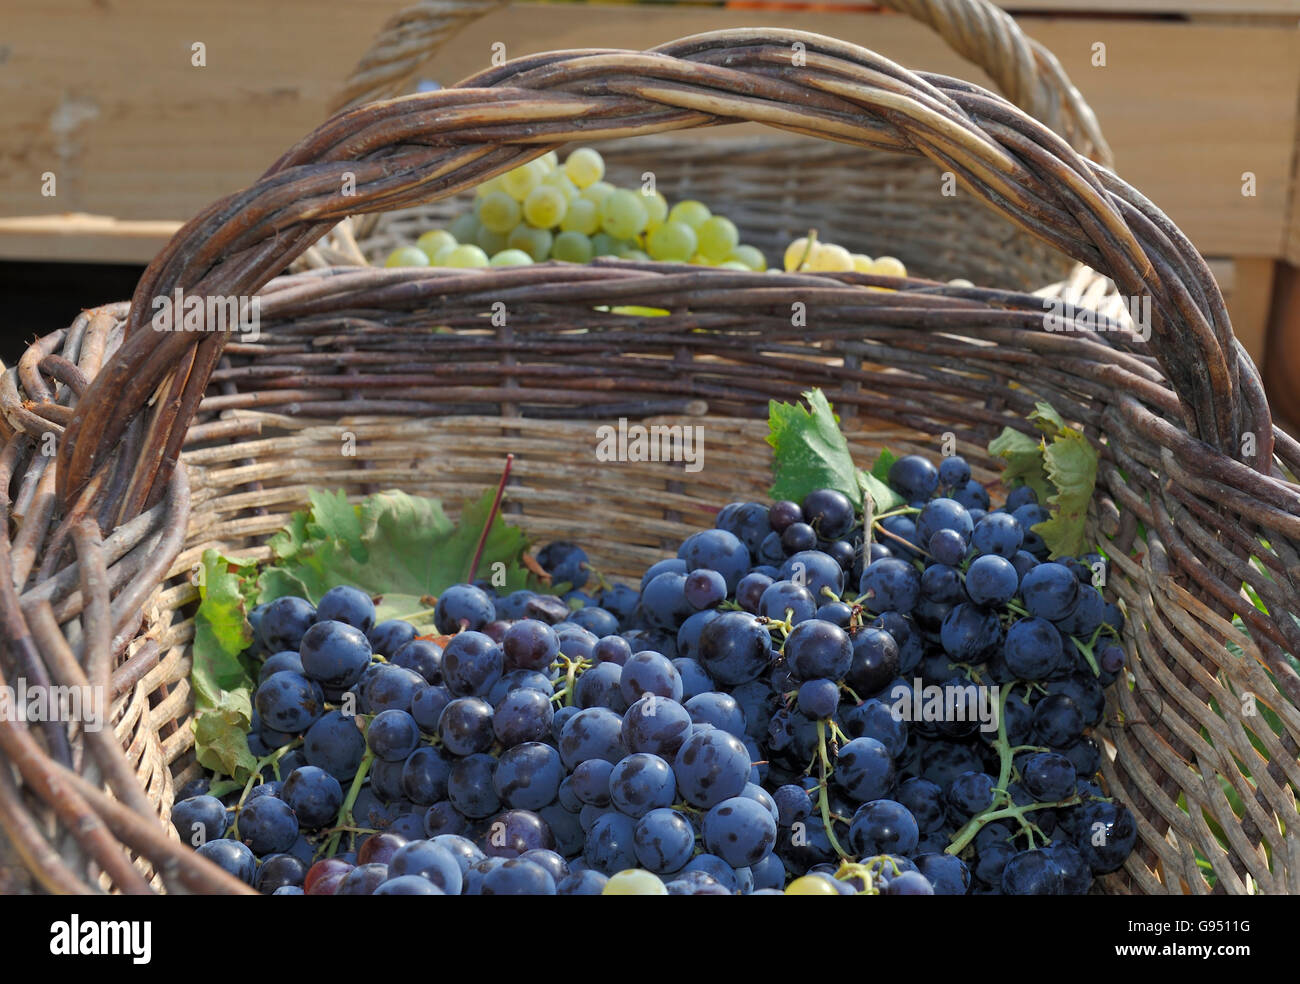 Le bleu et le vert des raisins de la Provence dans les paniers en osier après la récolte Banque D'Images